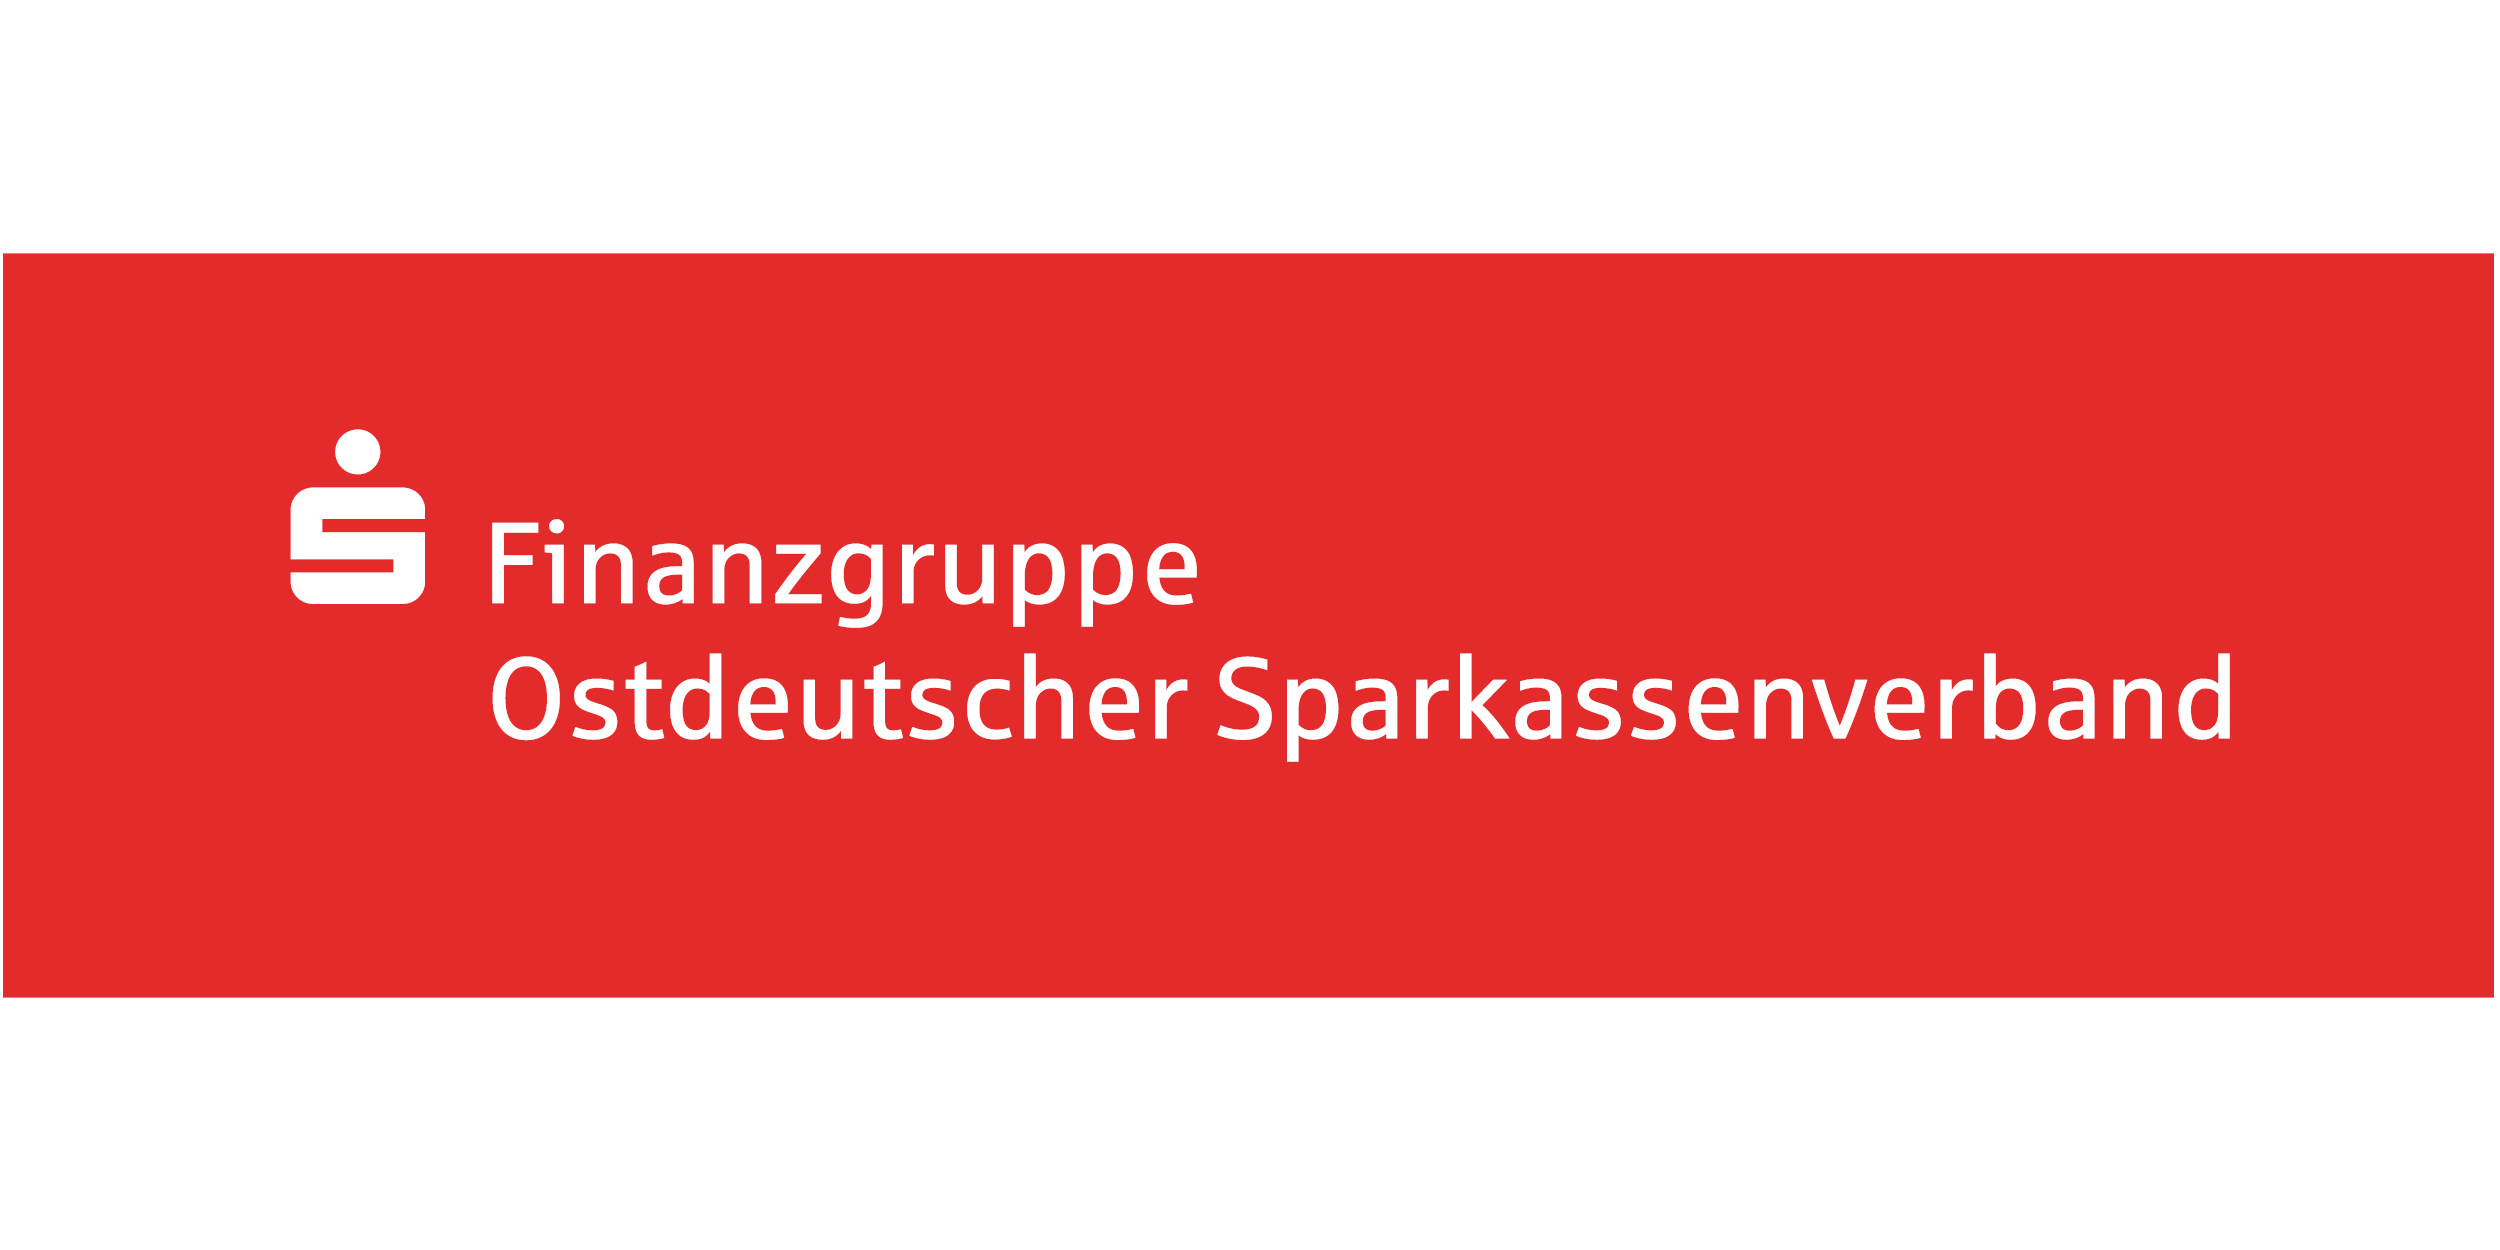 Ostdeutscher Sparkassenverband